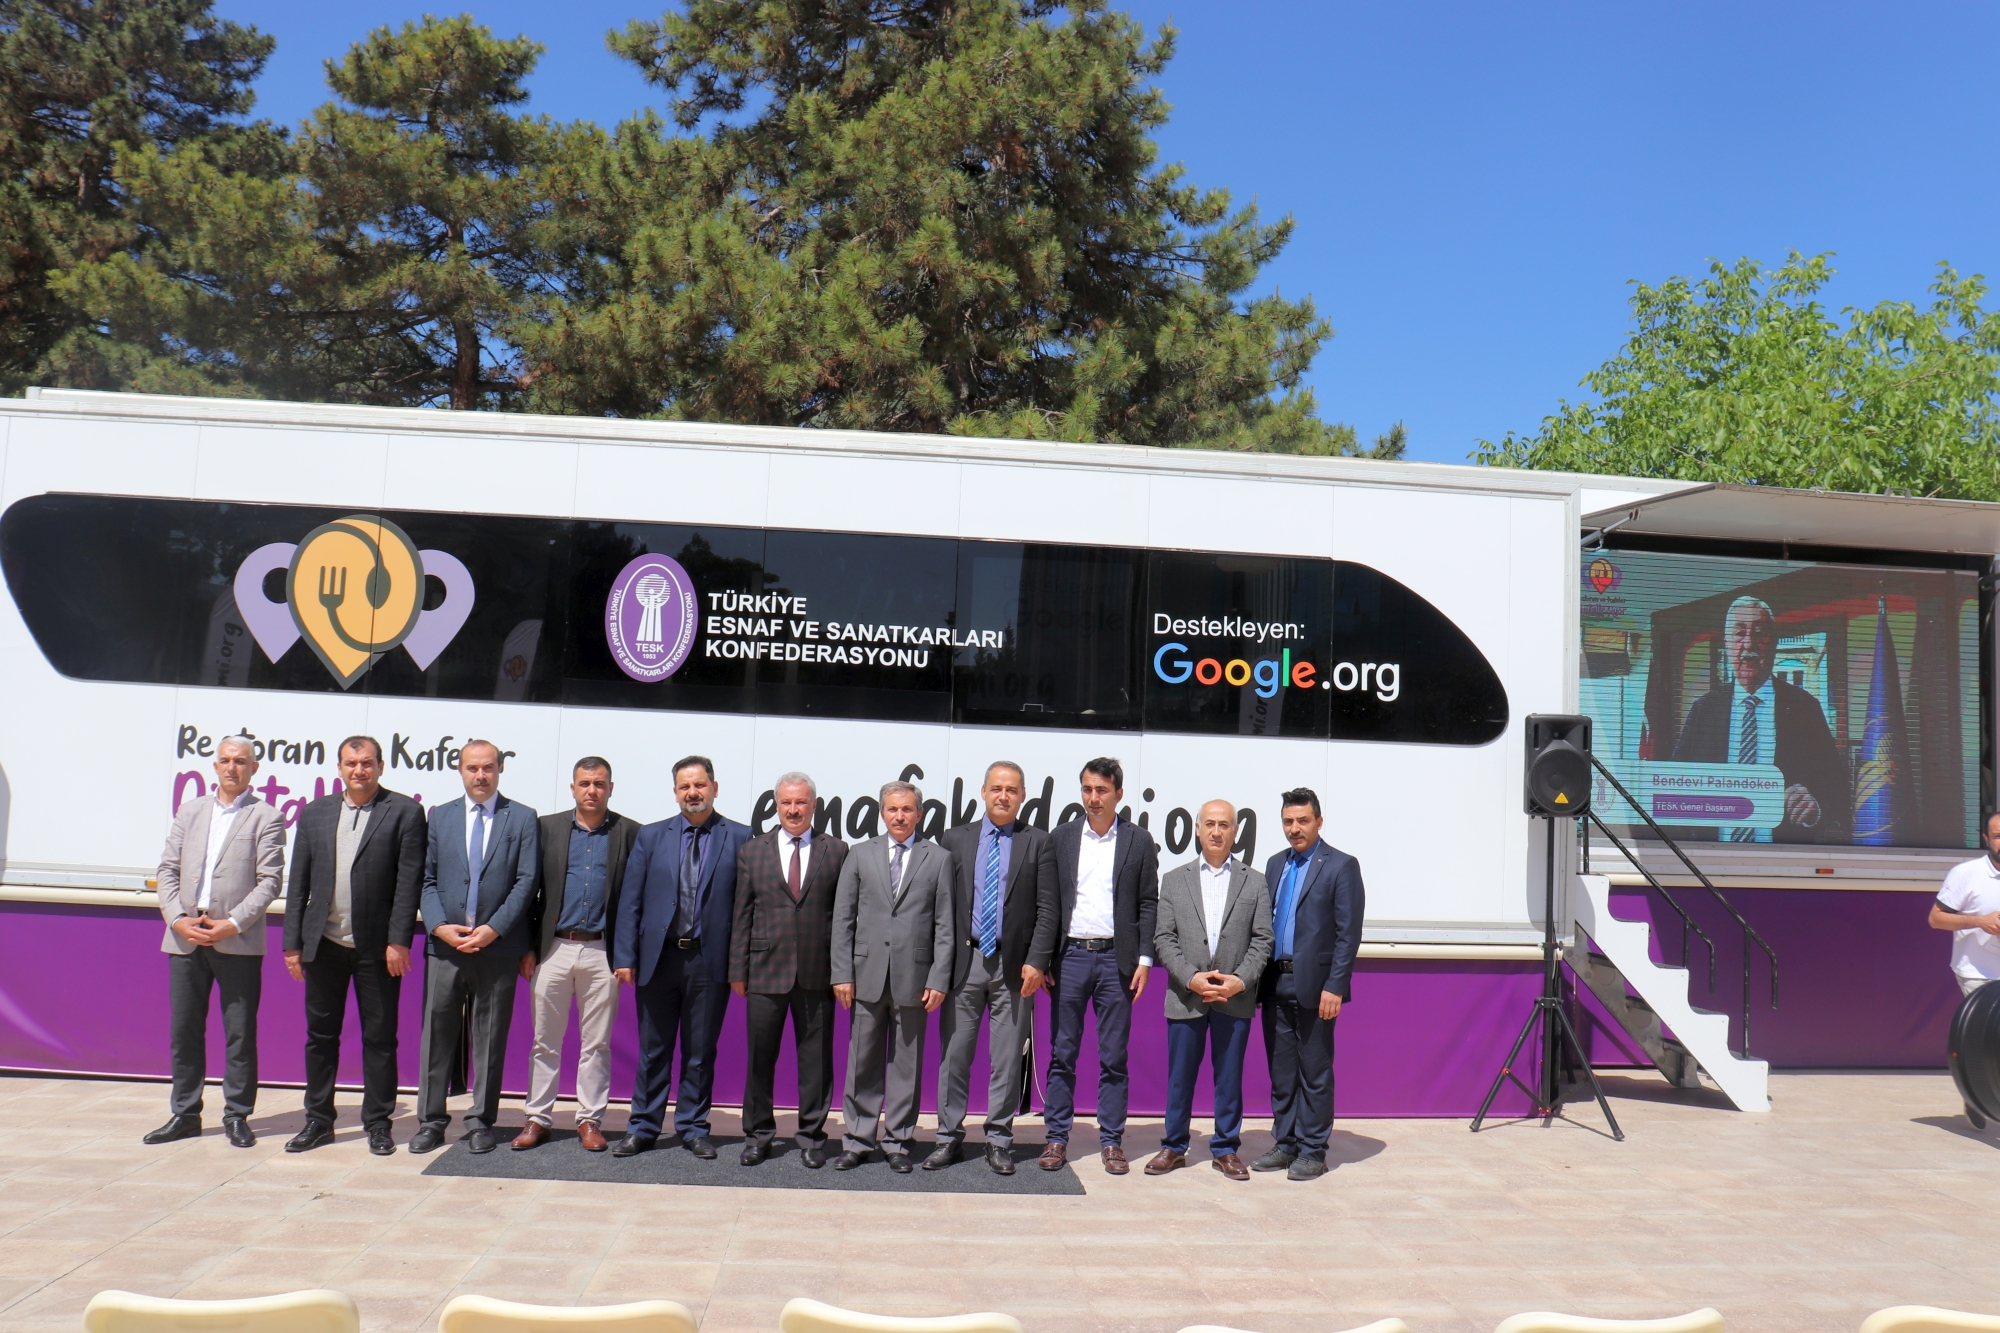 Türkiye Esnaf ve Sanatkârları Konfederasyonu (TESK) ve Google iş birliği ile gerçekleştirilen “Restoran ve Kafeler Dijitalleşiyor” Projesi’nin Malatya’da tanıtımı yapıldı.